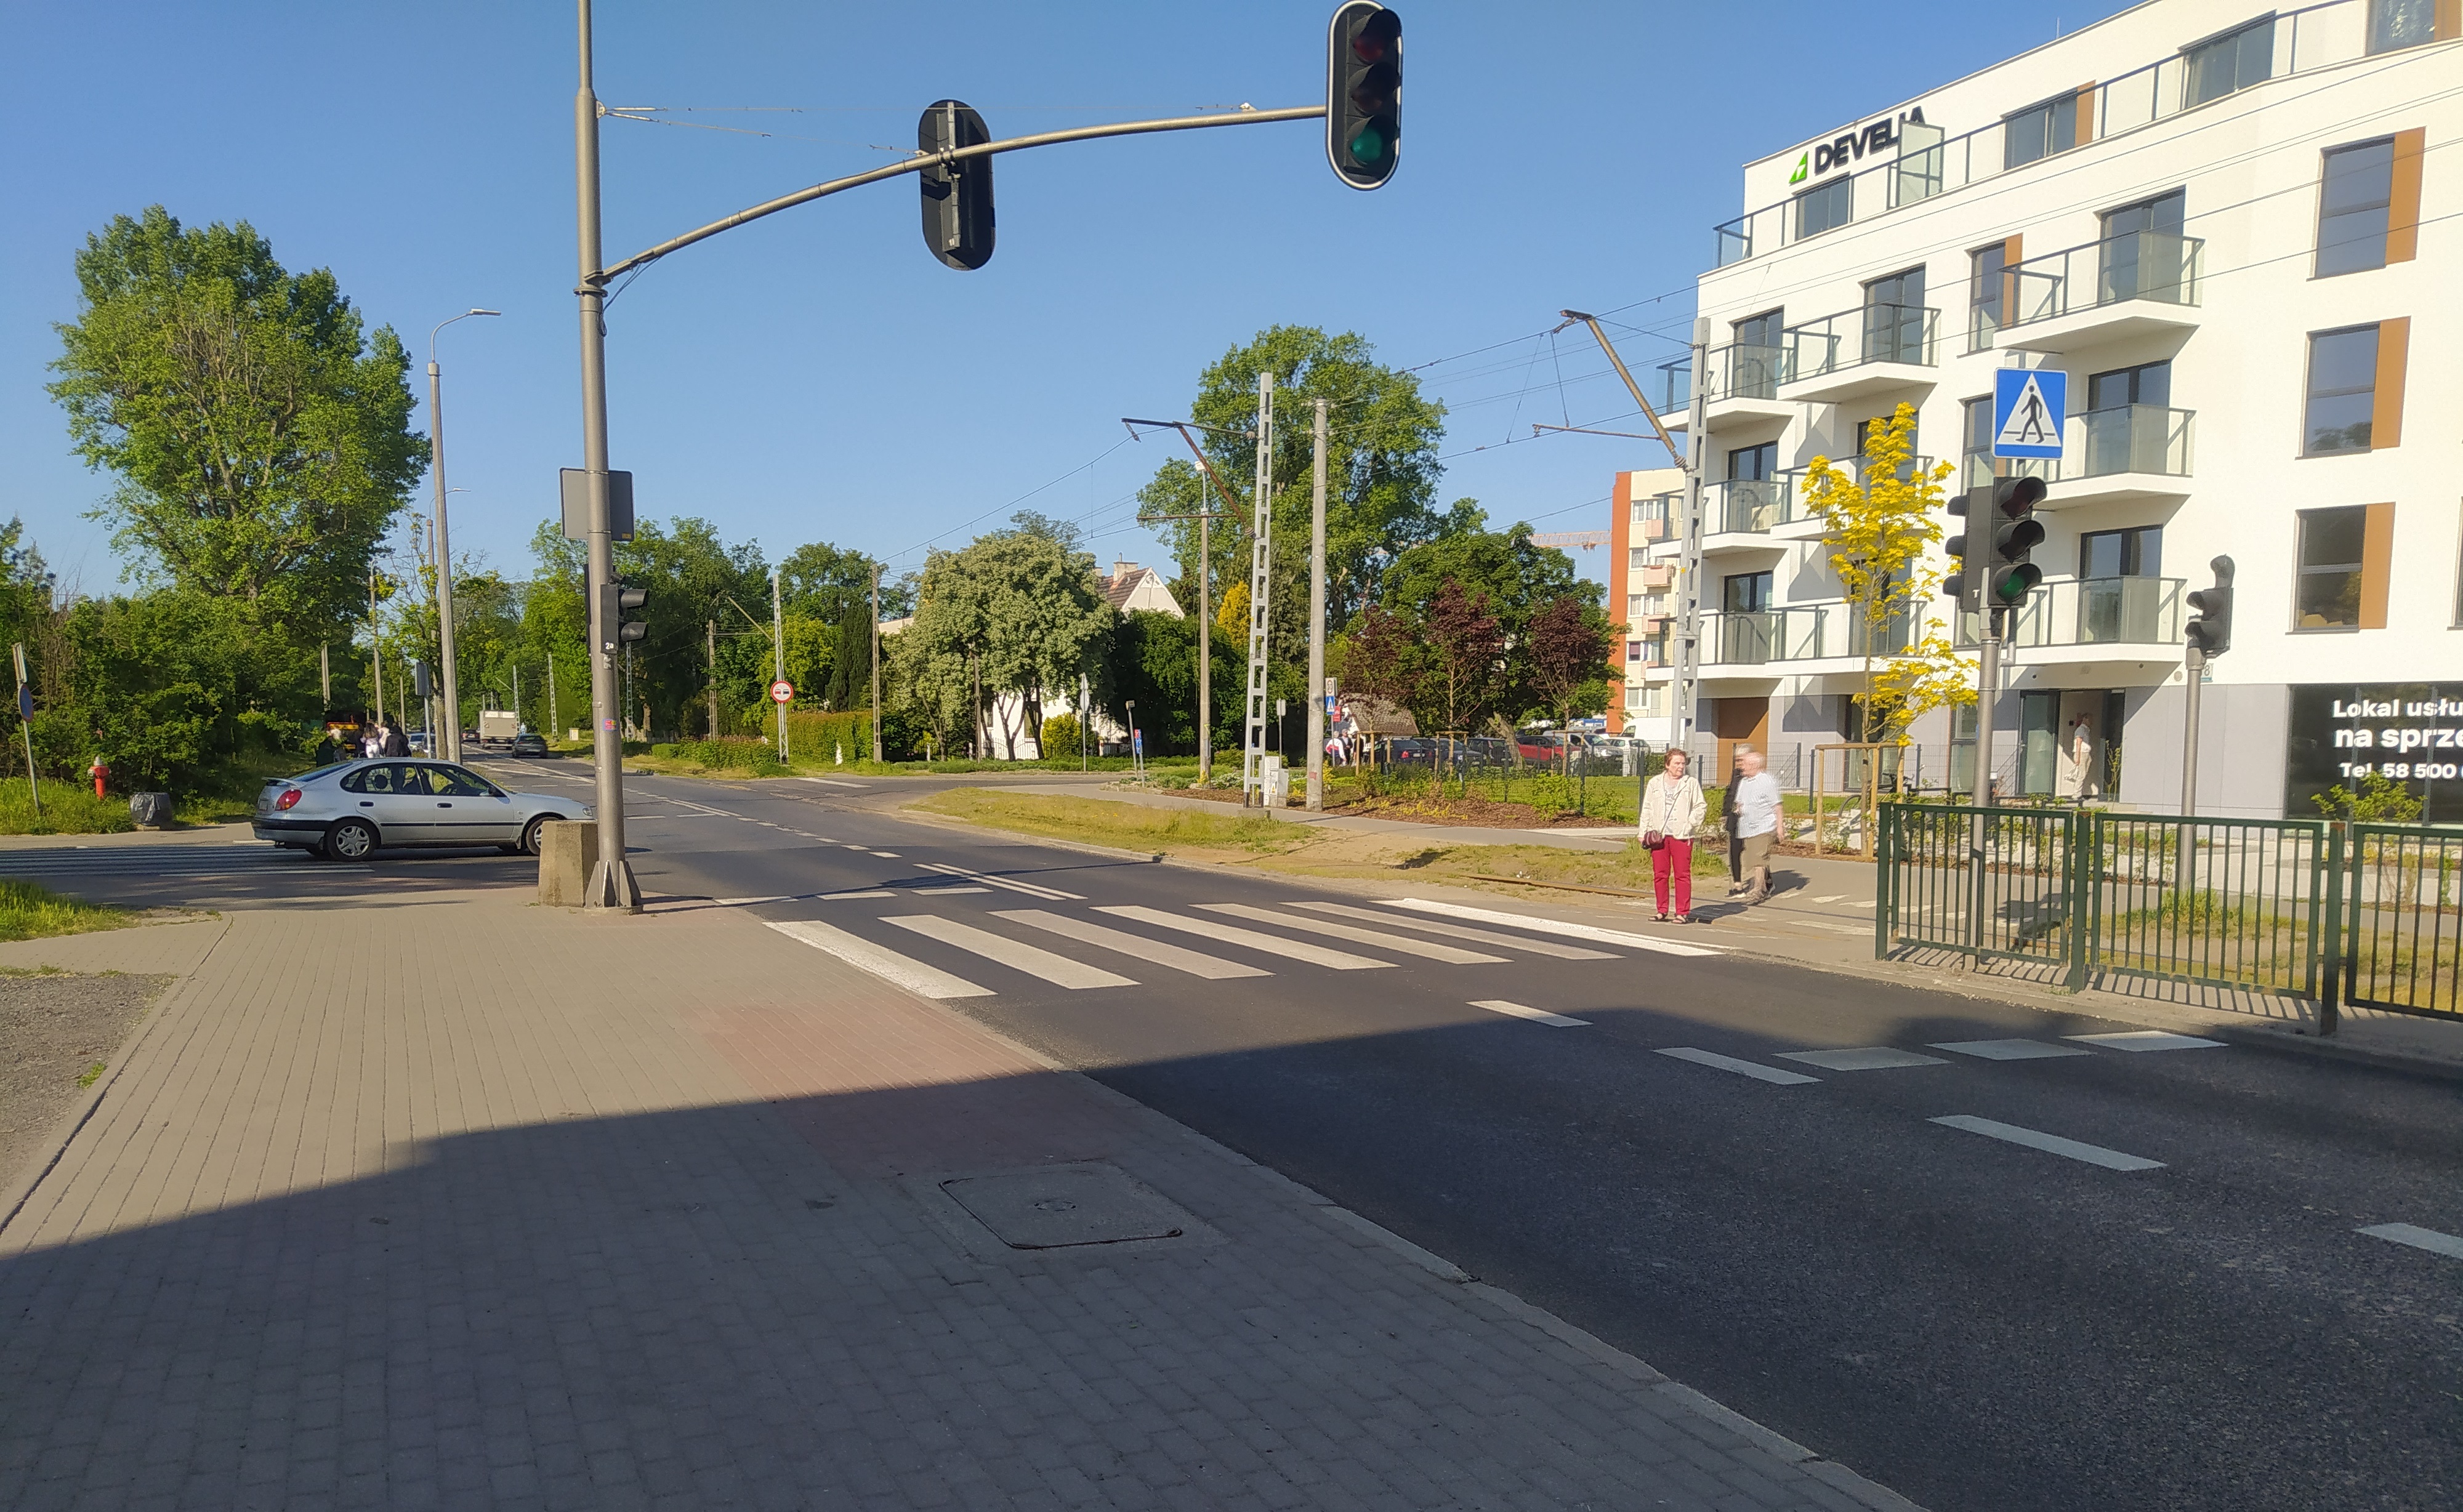 Zdjęcie przedstawia ulicę Gdańską po wykonaniu remontu